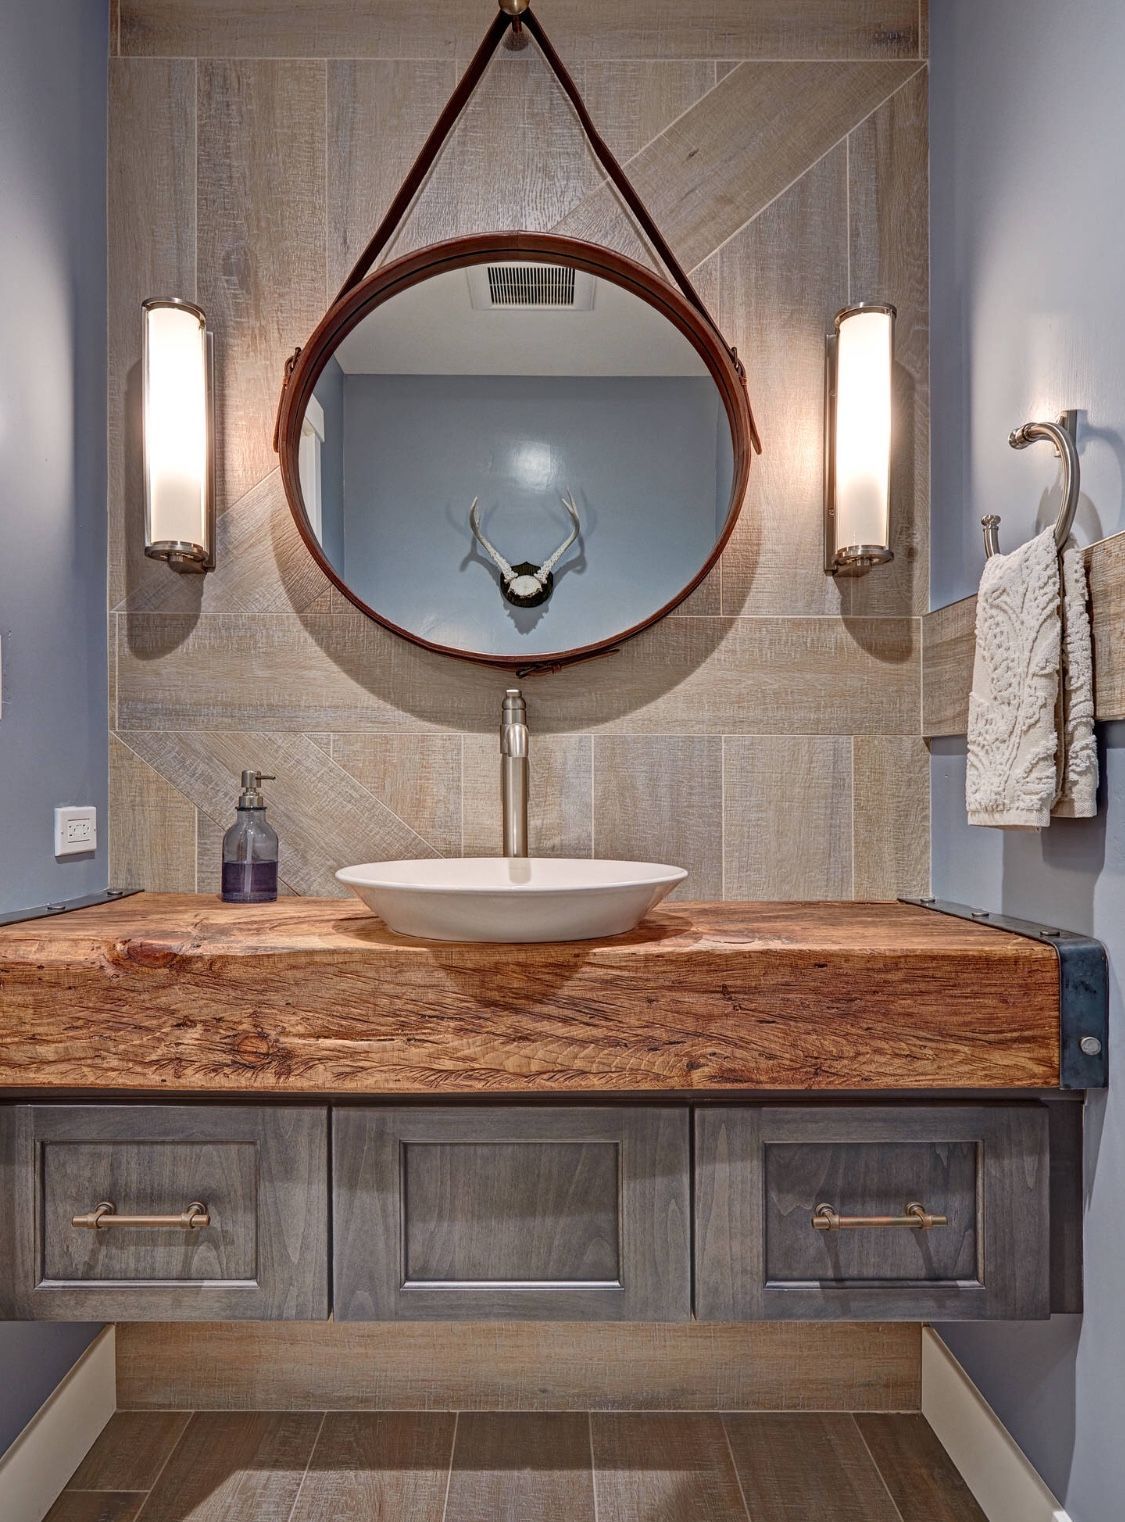 salle de bain gris et bois style rustique mirroir rond